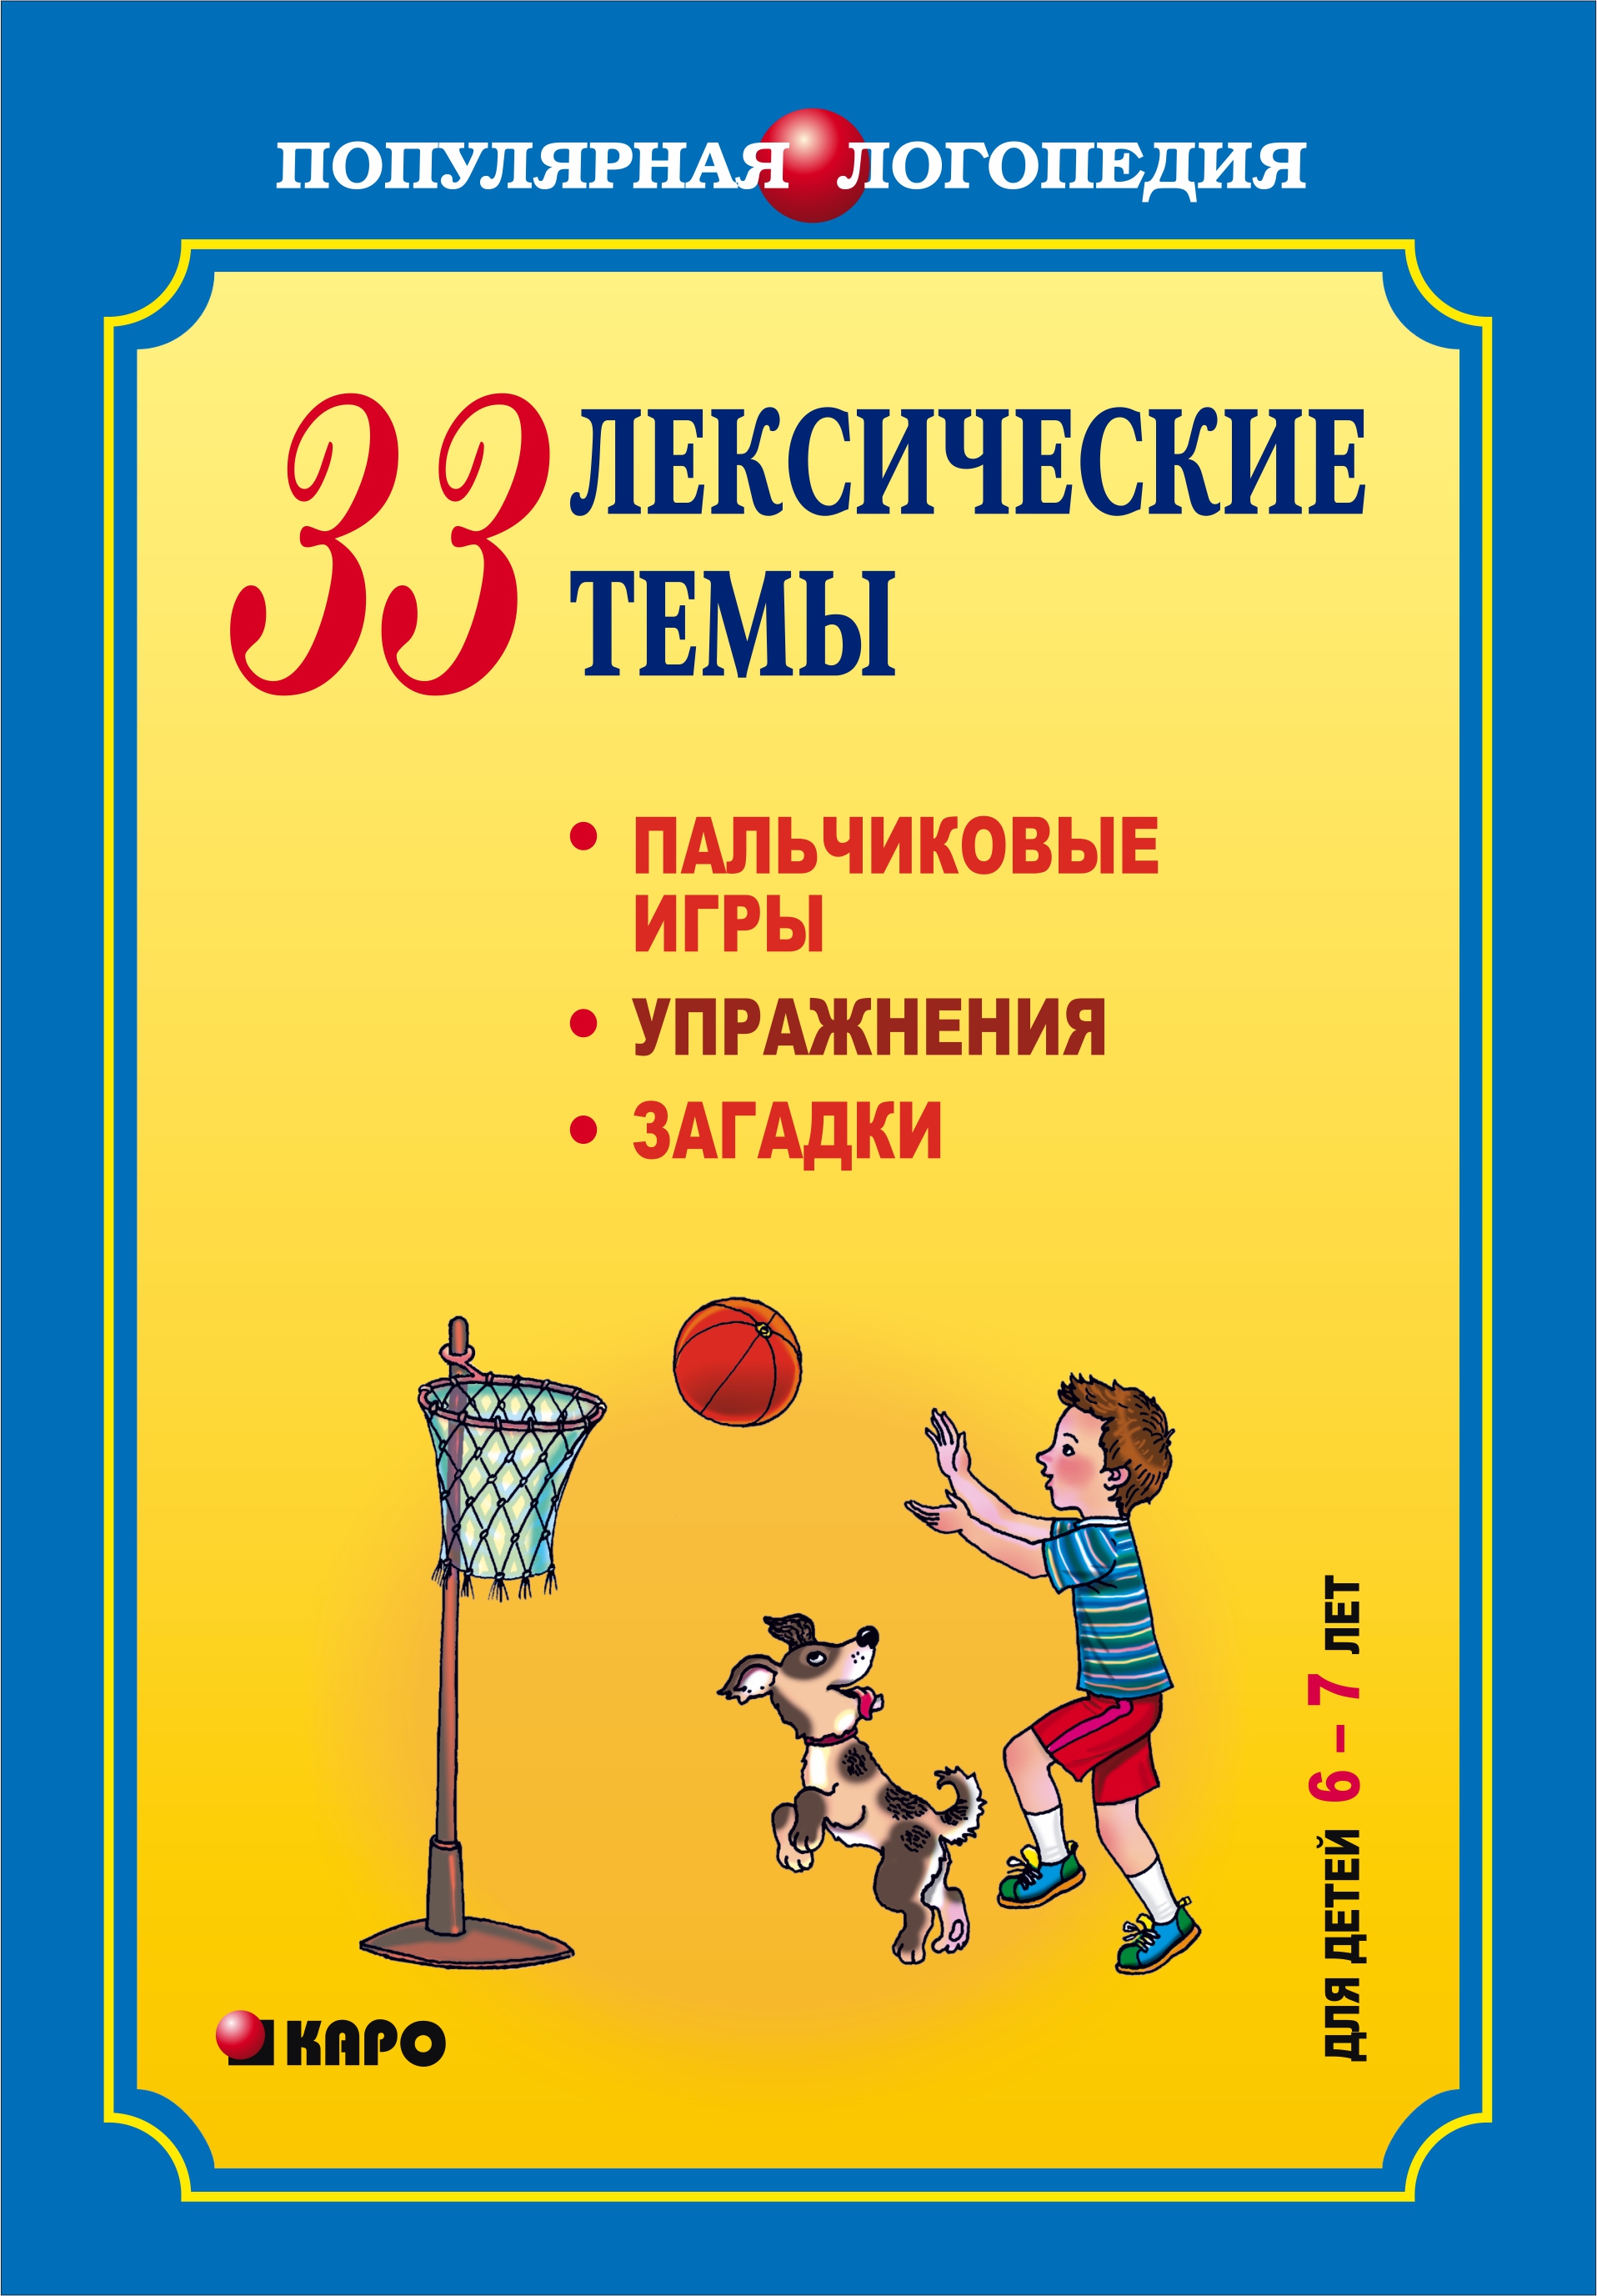 33лексические темы. Пальчиковые игры, упражнения, загадки для детей 6-7 лет